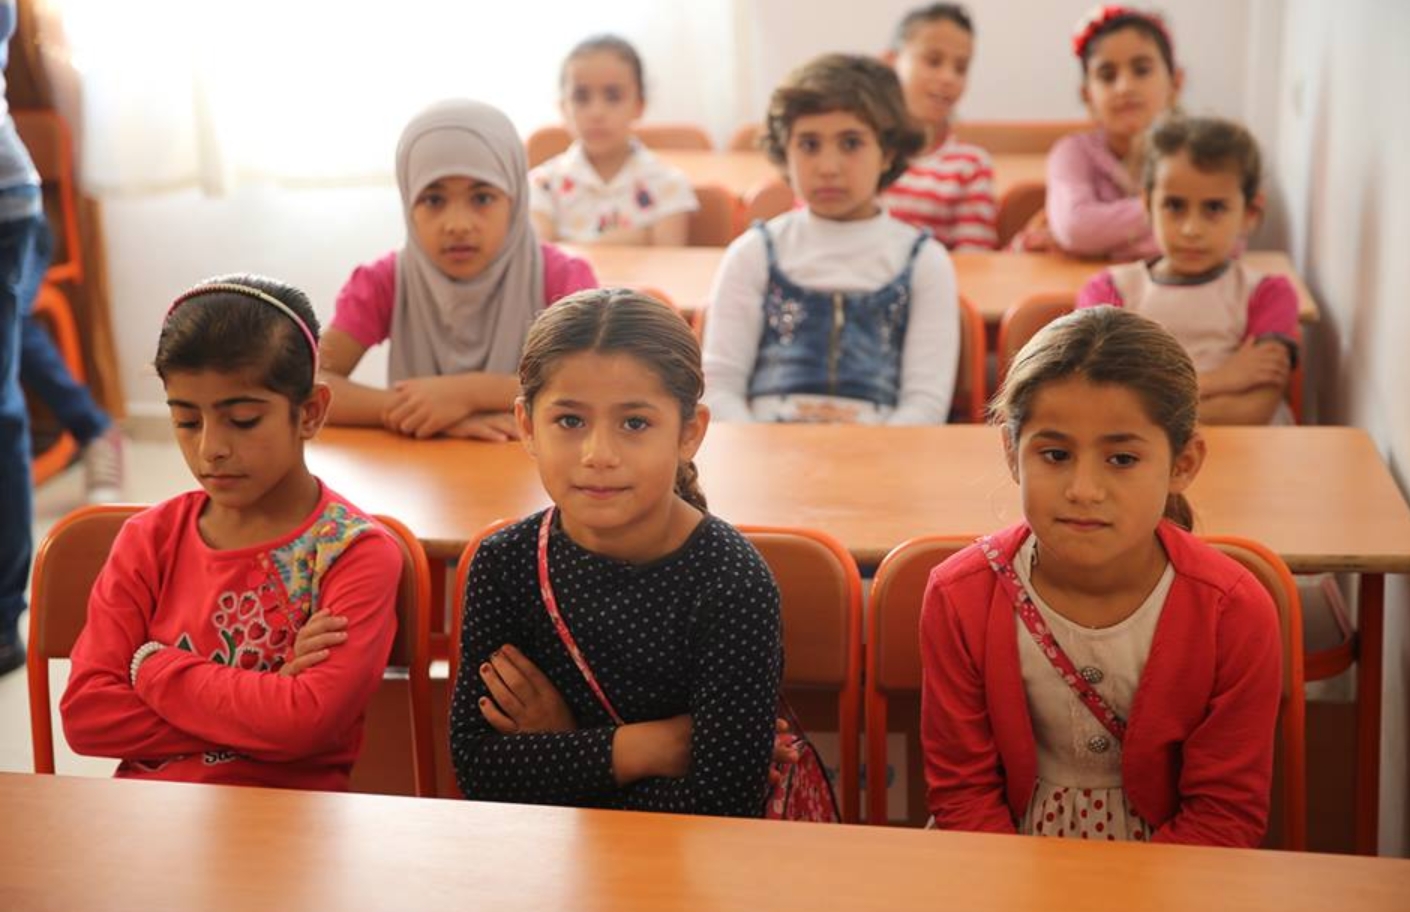 أطفال سوريون يتفوقون في المدارس التركية .. ومنهم من يتحدث 3 إلى 4 لغات